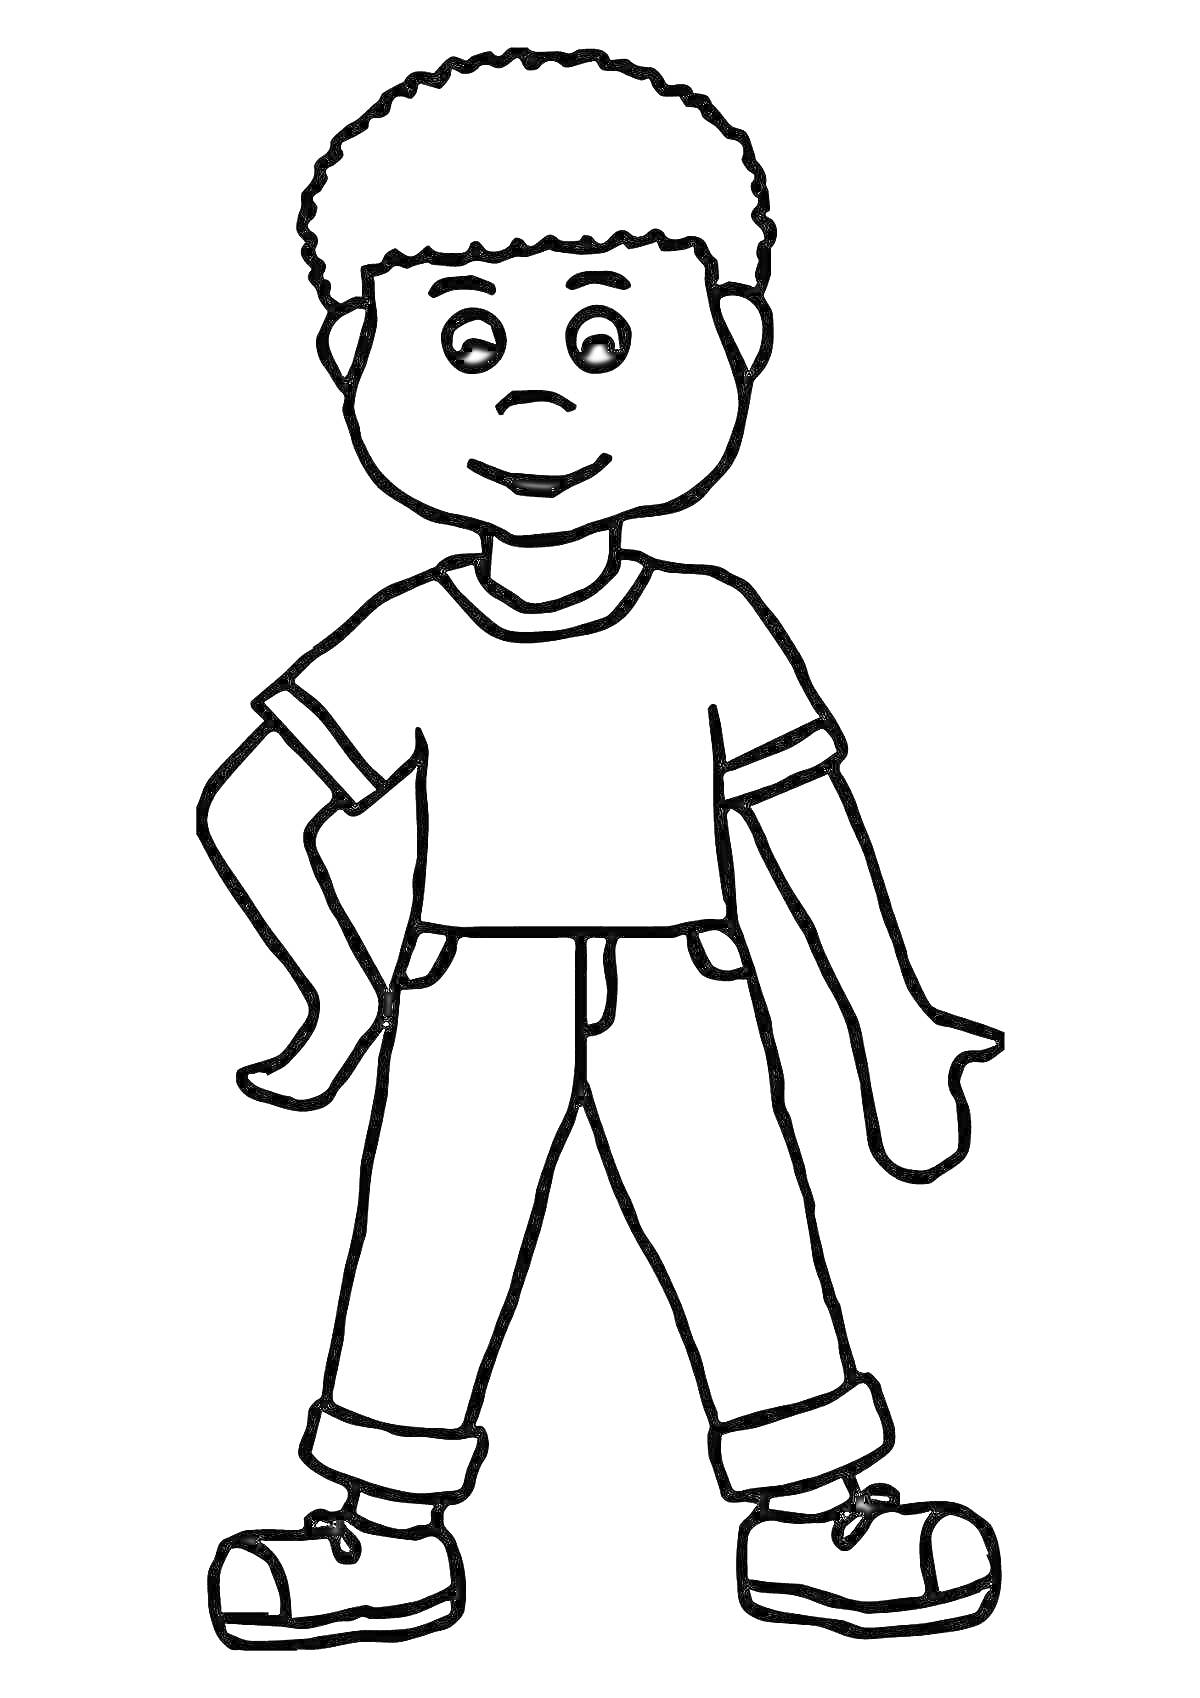 РаскраскаМальчик с короткими волосами, в футболке и брюках